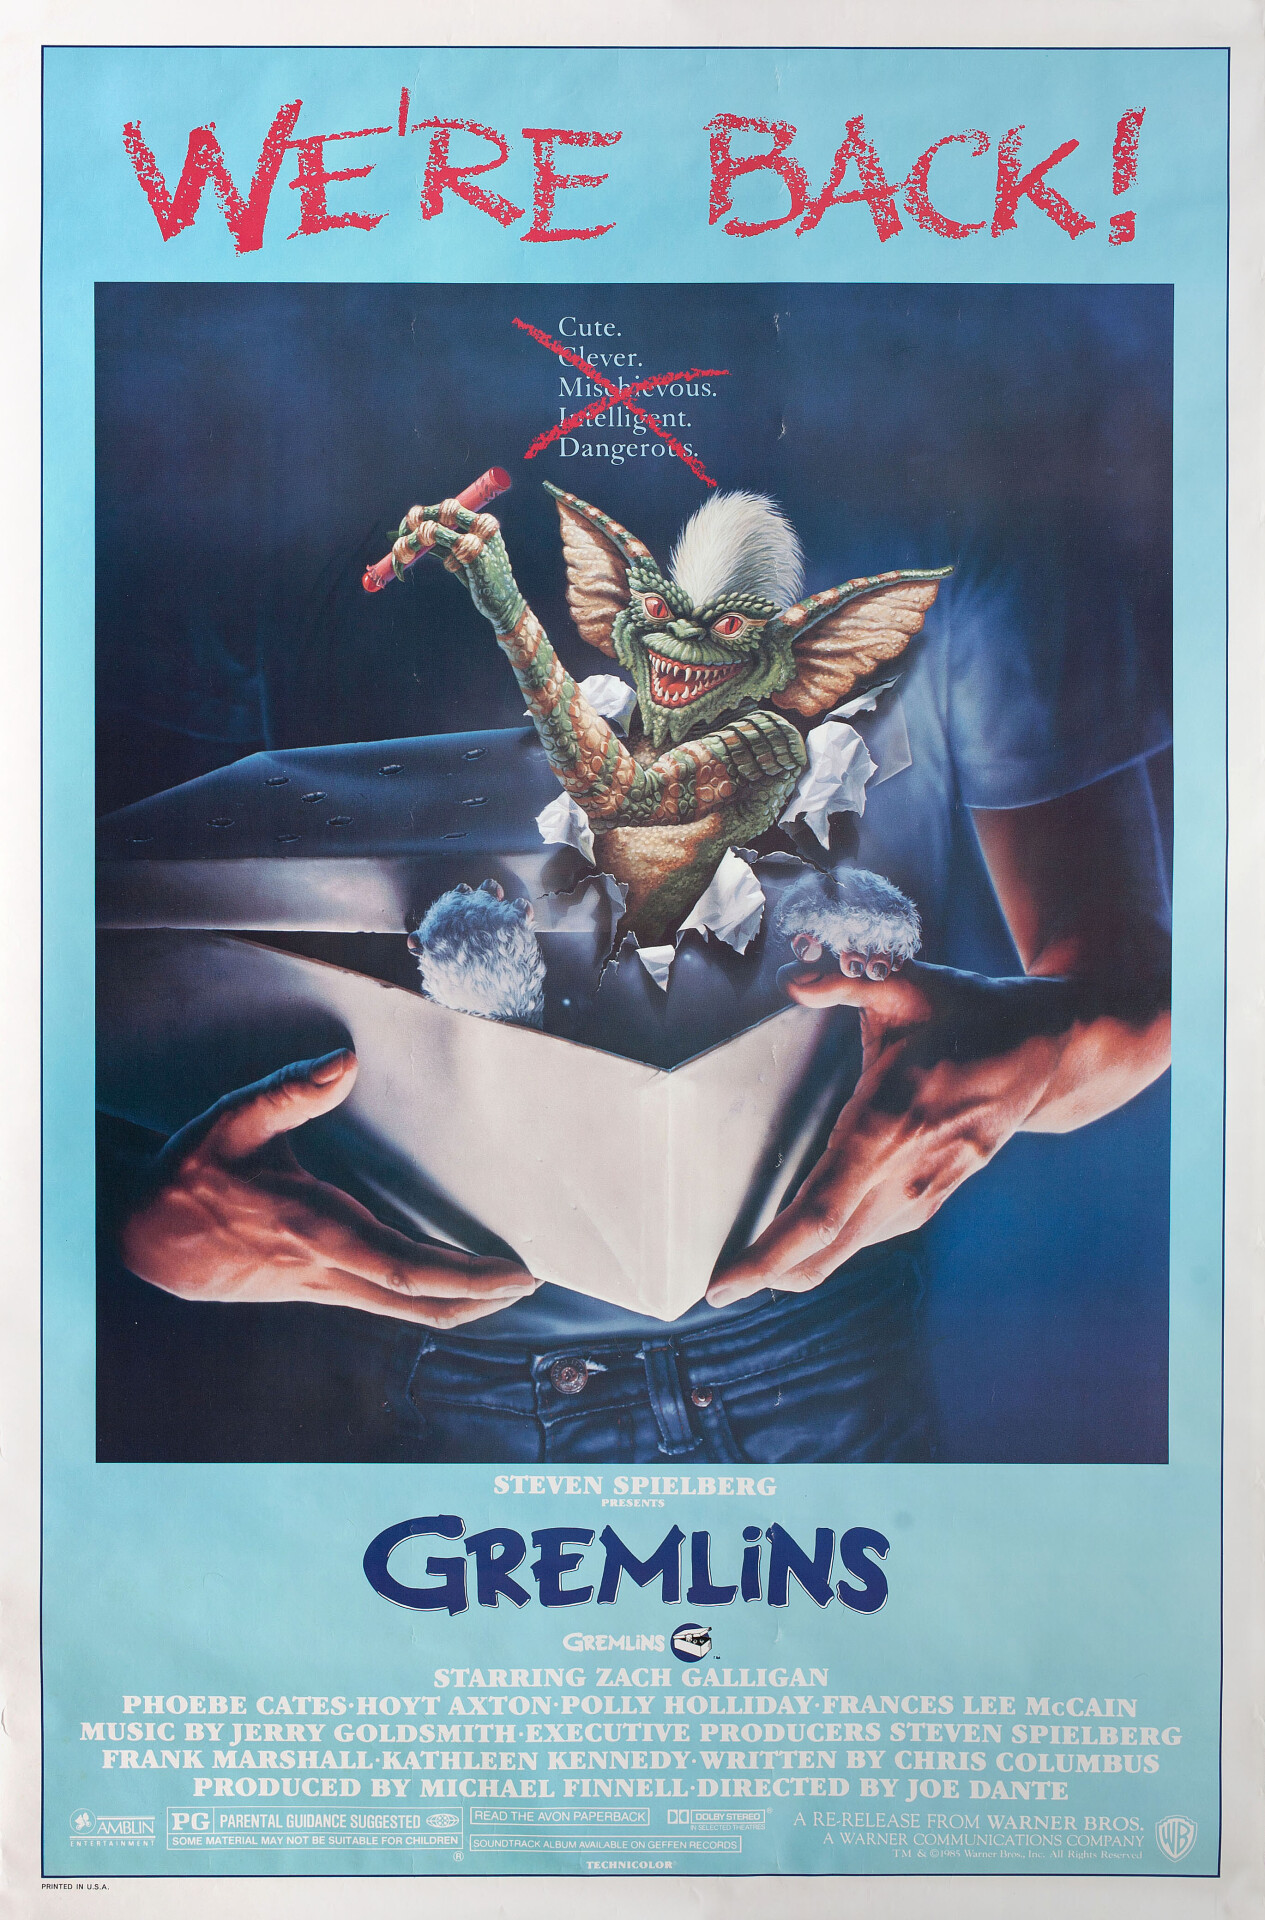 Гремлины (Gremlins, 1984), режиссёр Джо Данте, американский постер к фильму (ужасы, 1985 год)